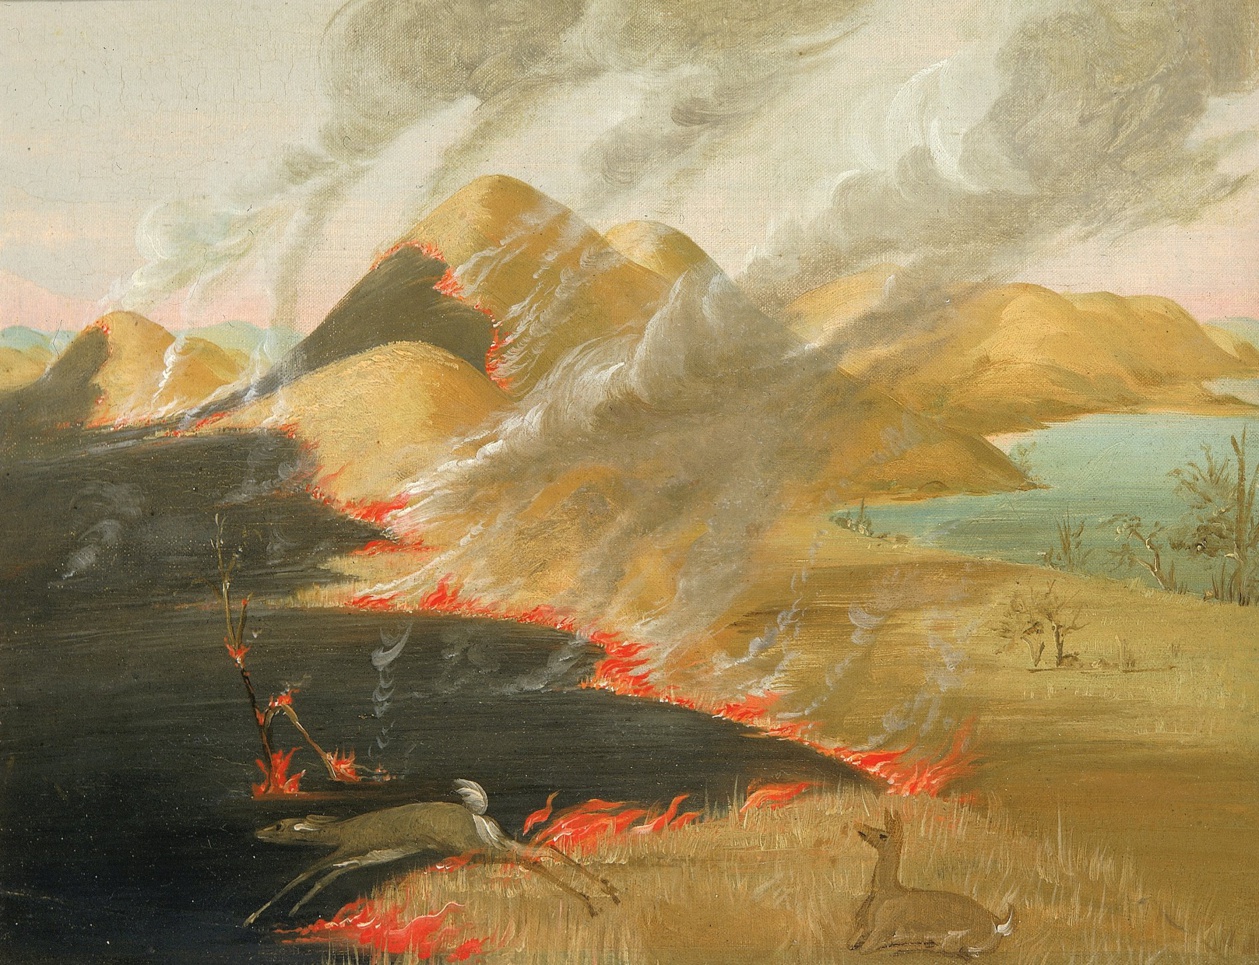 Prairie Bluffs Burning, 1832